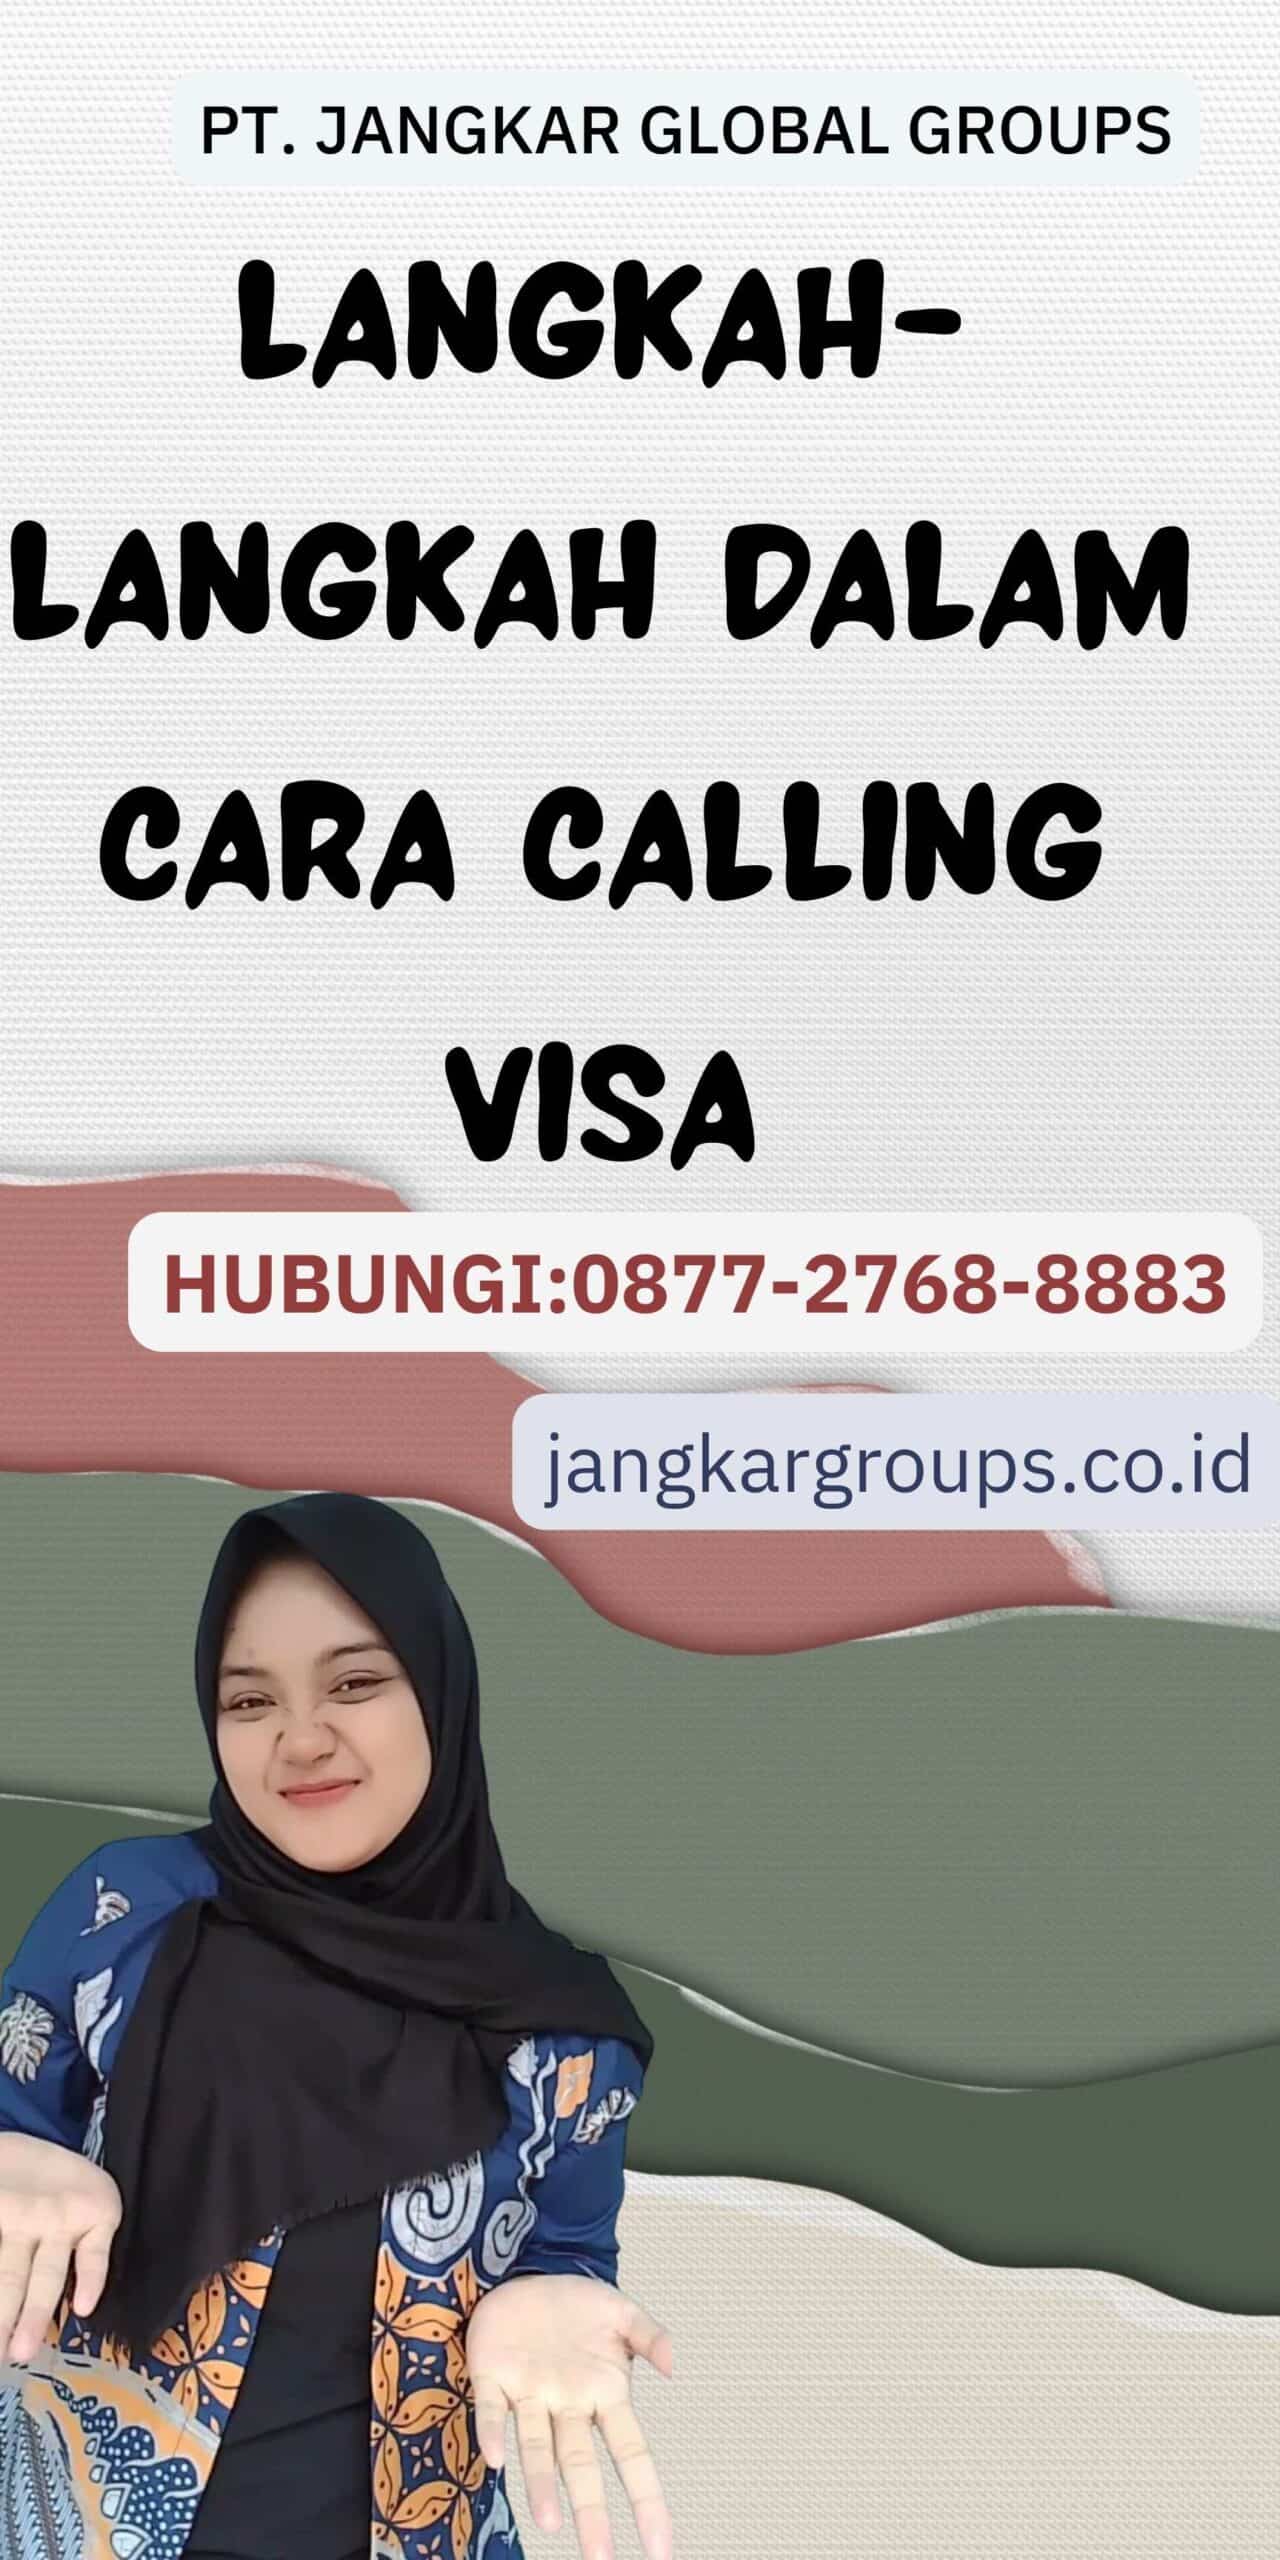 Langkah-langkah dalam Cara Calling Visa